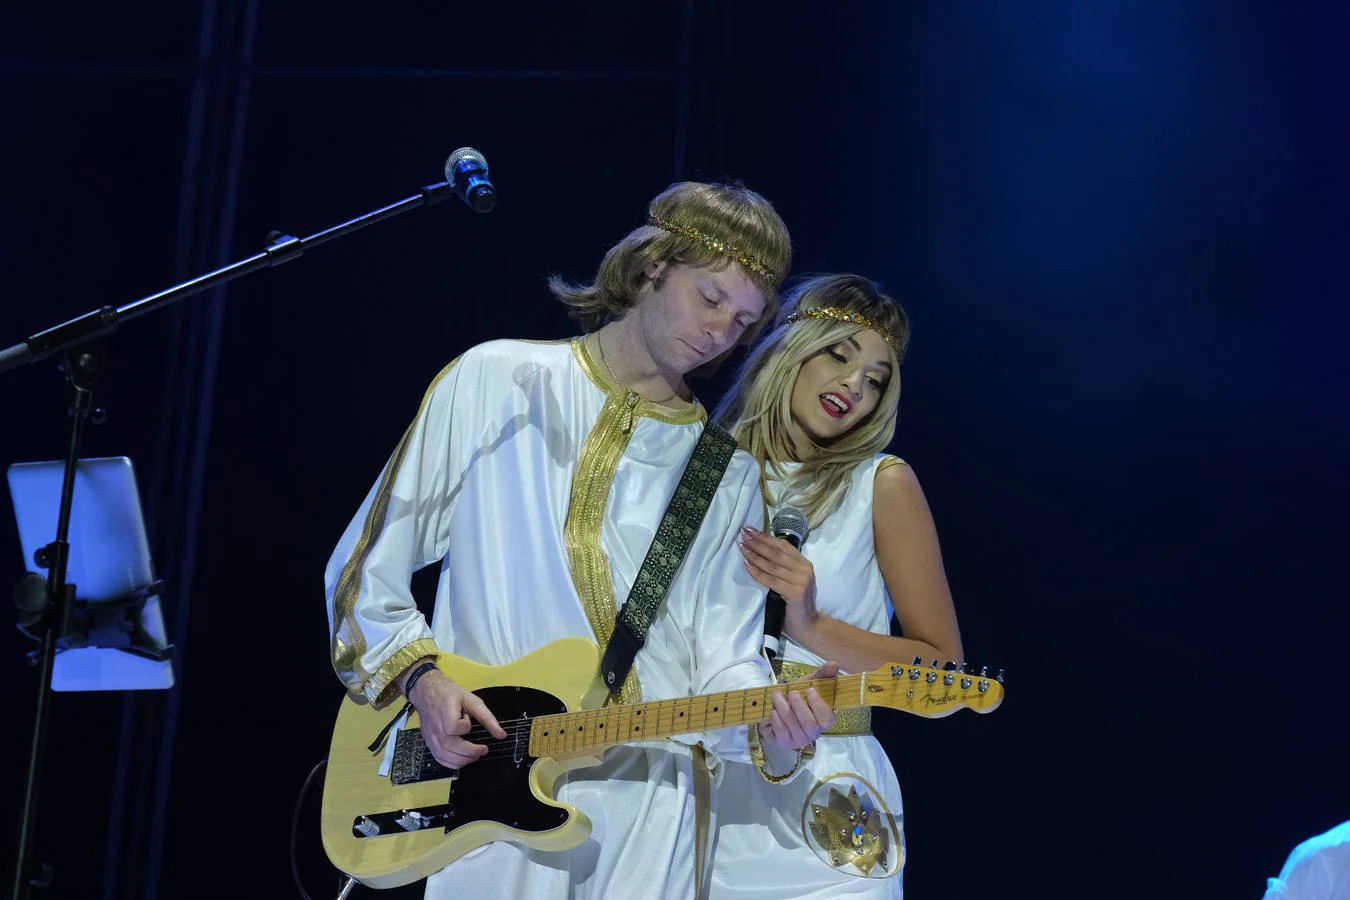 FOTOS: El gran legado de ABBA llena de ritmo y baile la noche de Sancti Petri